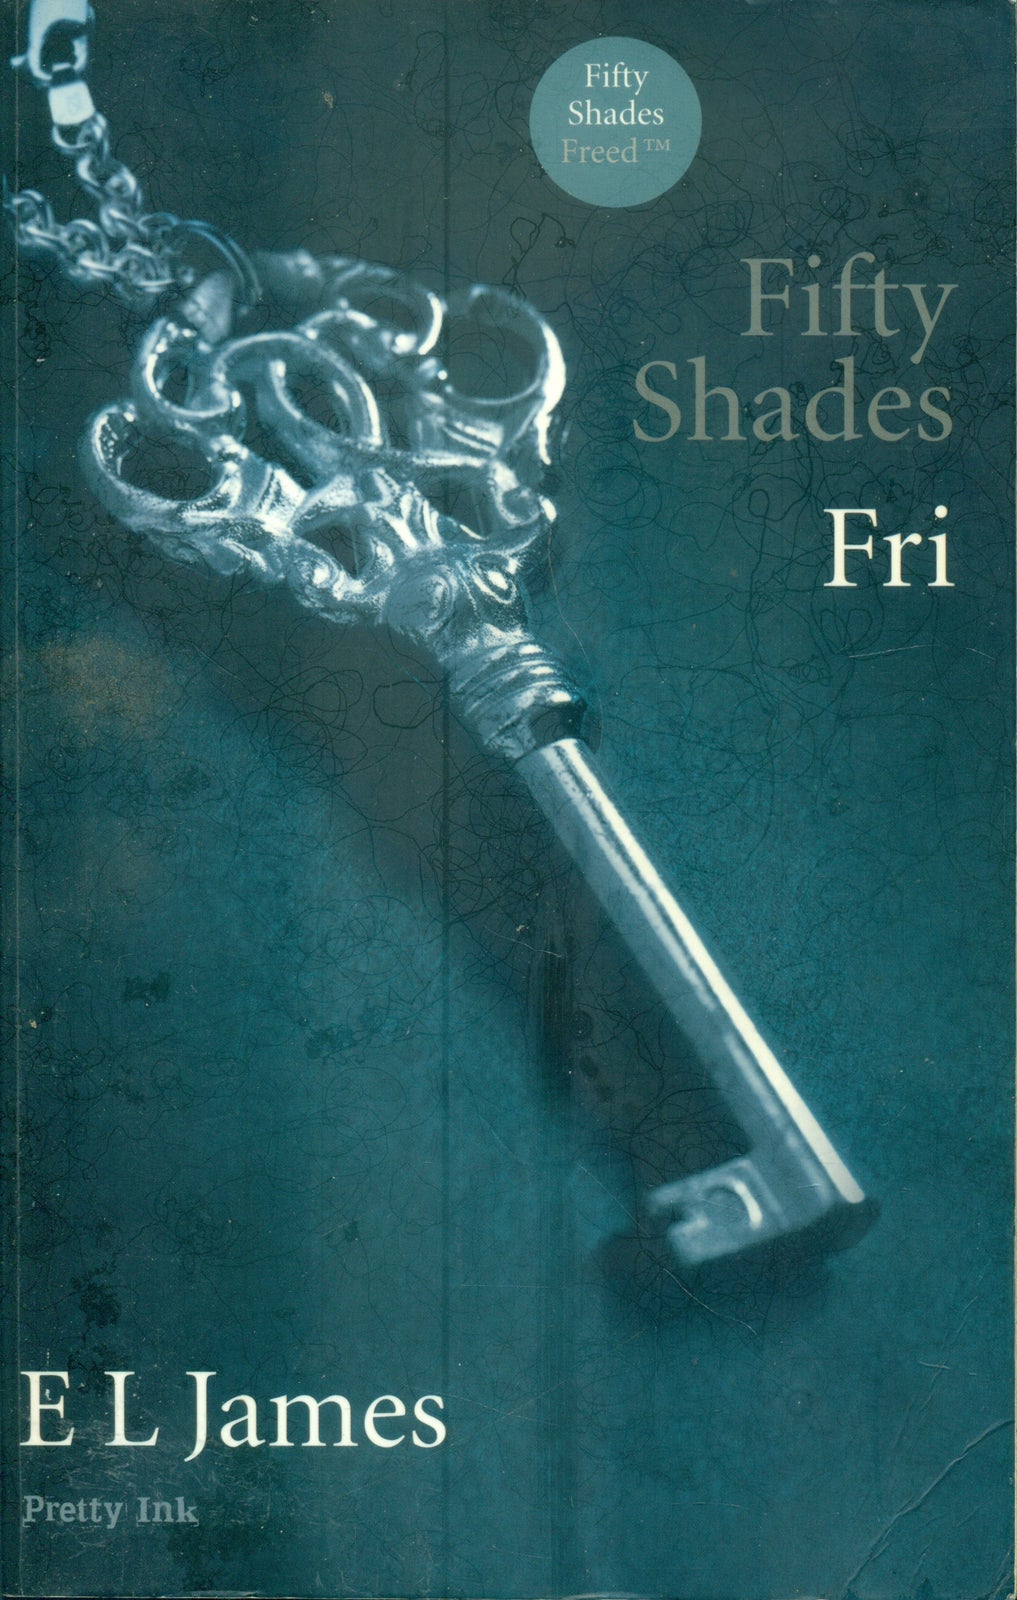 Fifty shades - fri, E.L. James, genre: roman